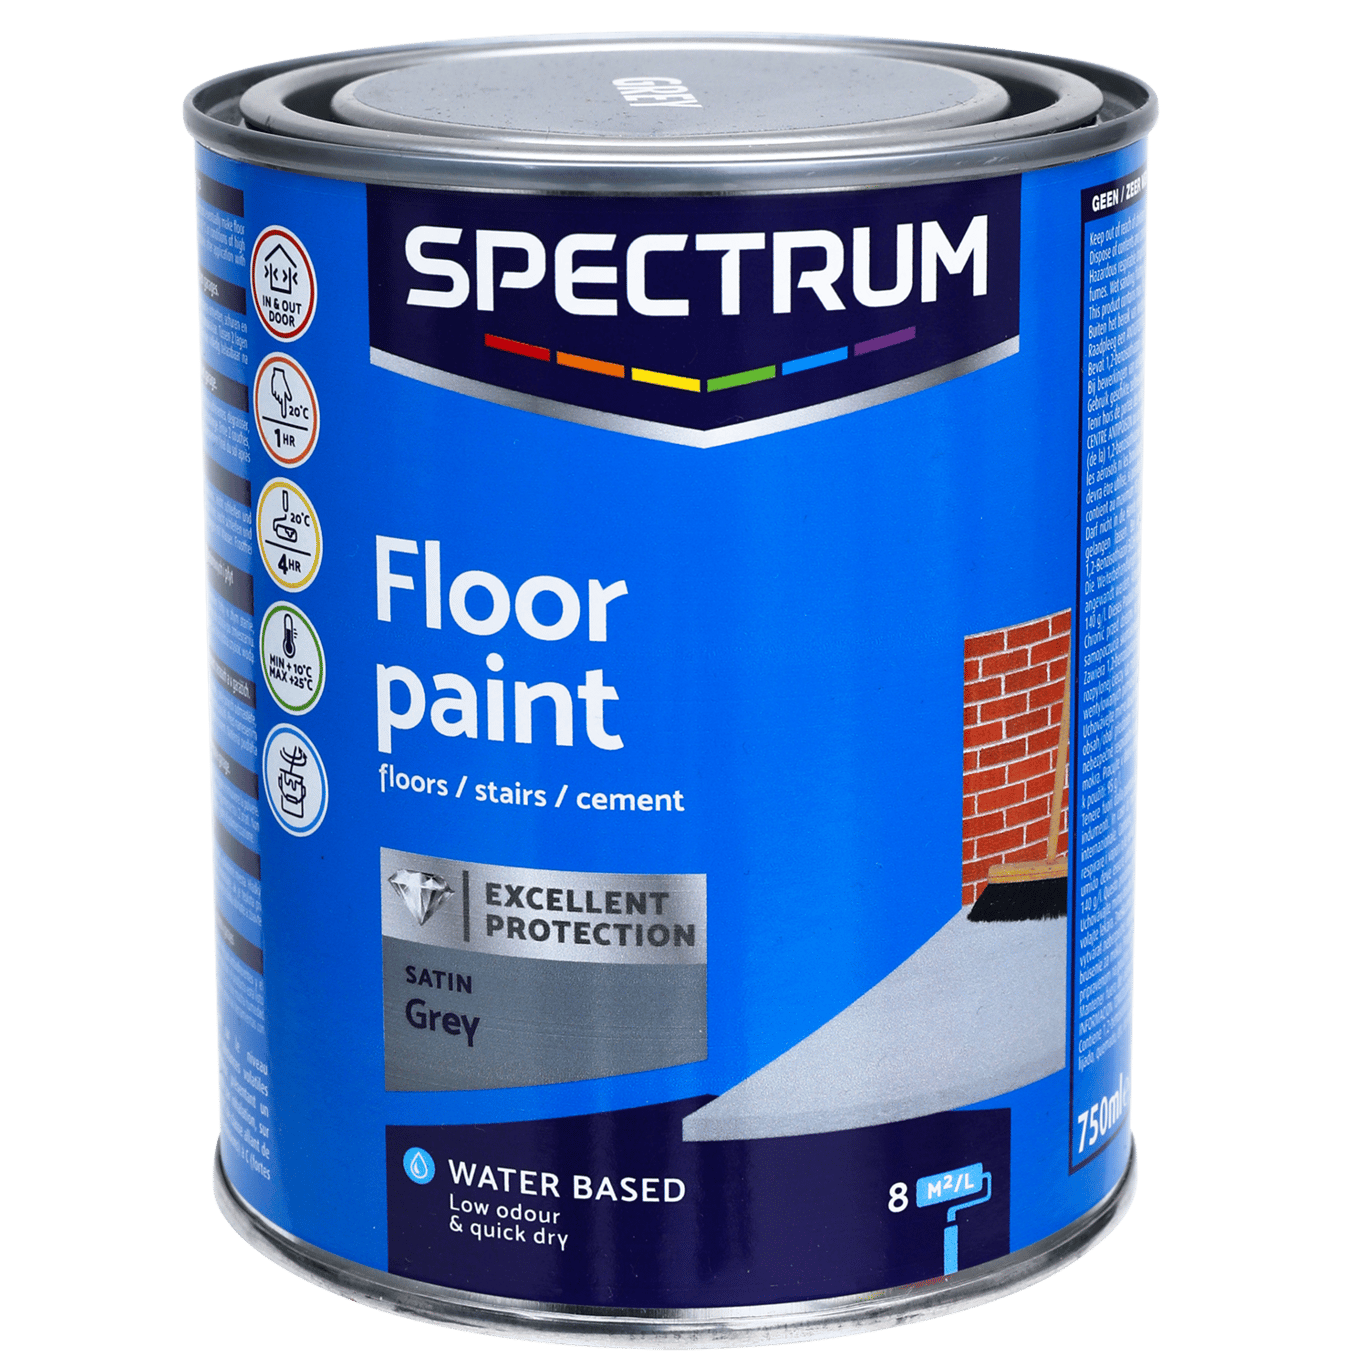 Spectrum laque métallisée haute brillance 2 en 1 blanche 750 ml